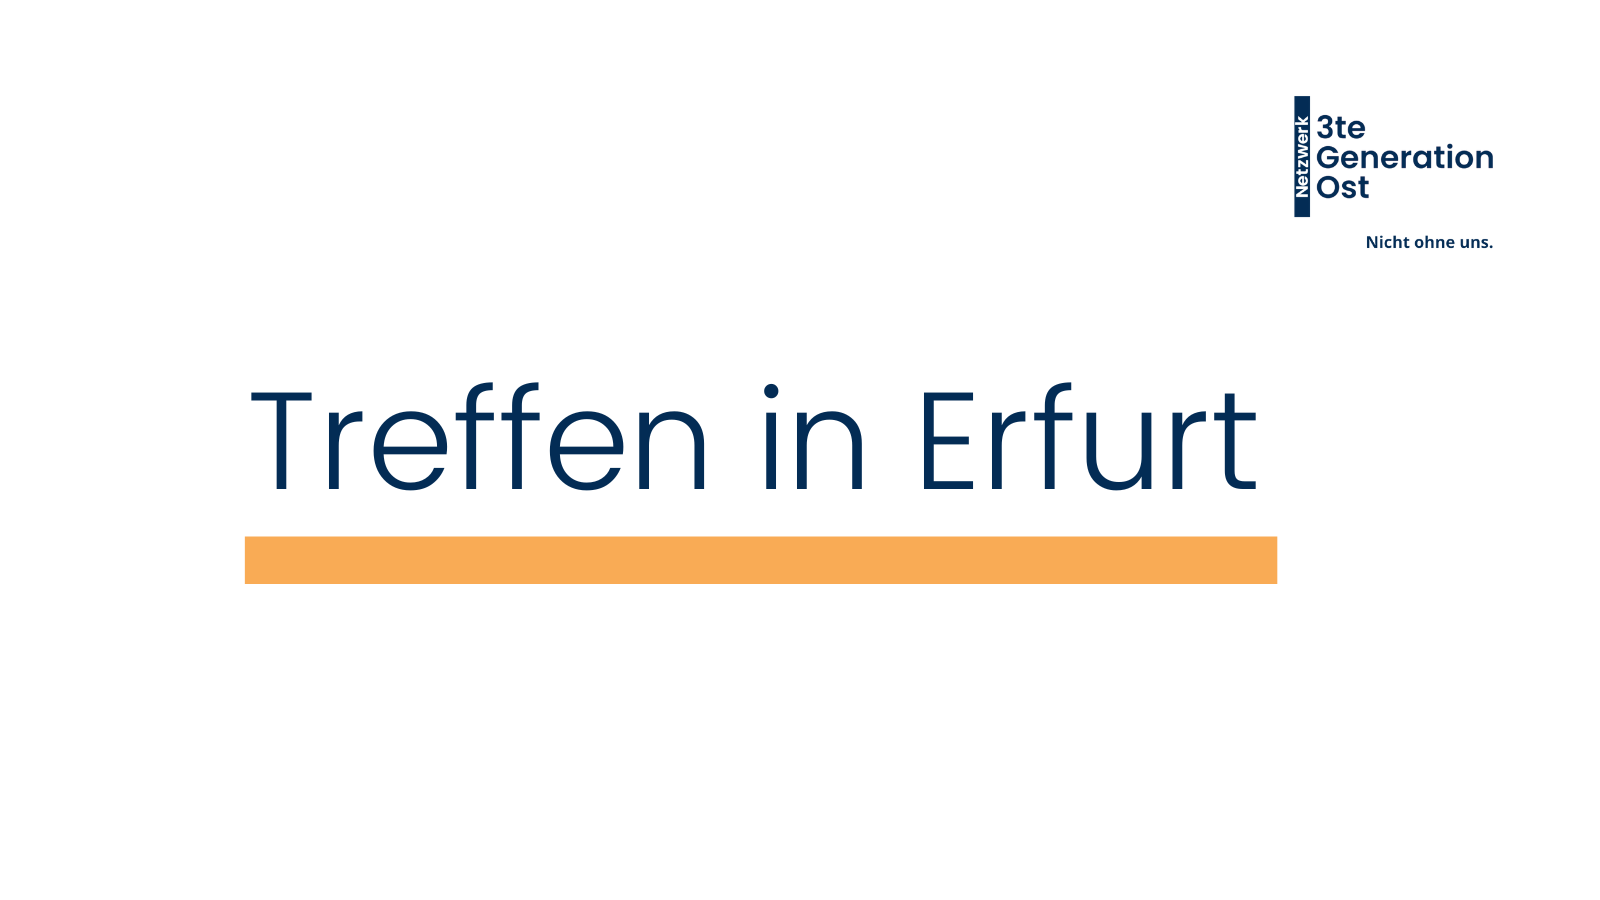 Logo Netzwerk 3te Generation Ost oben rechts. Mittig platziert in dunkelblau - Treffen in Erfurt mit orangenem Unterstrich